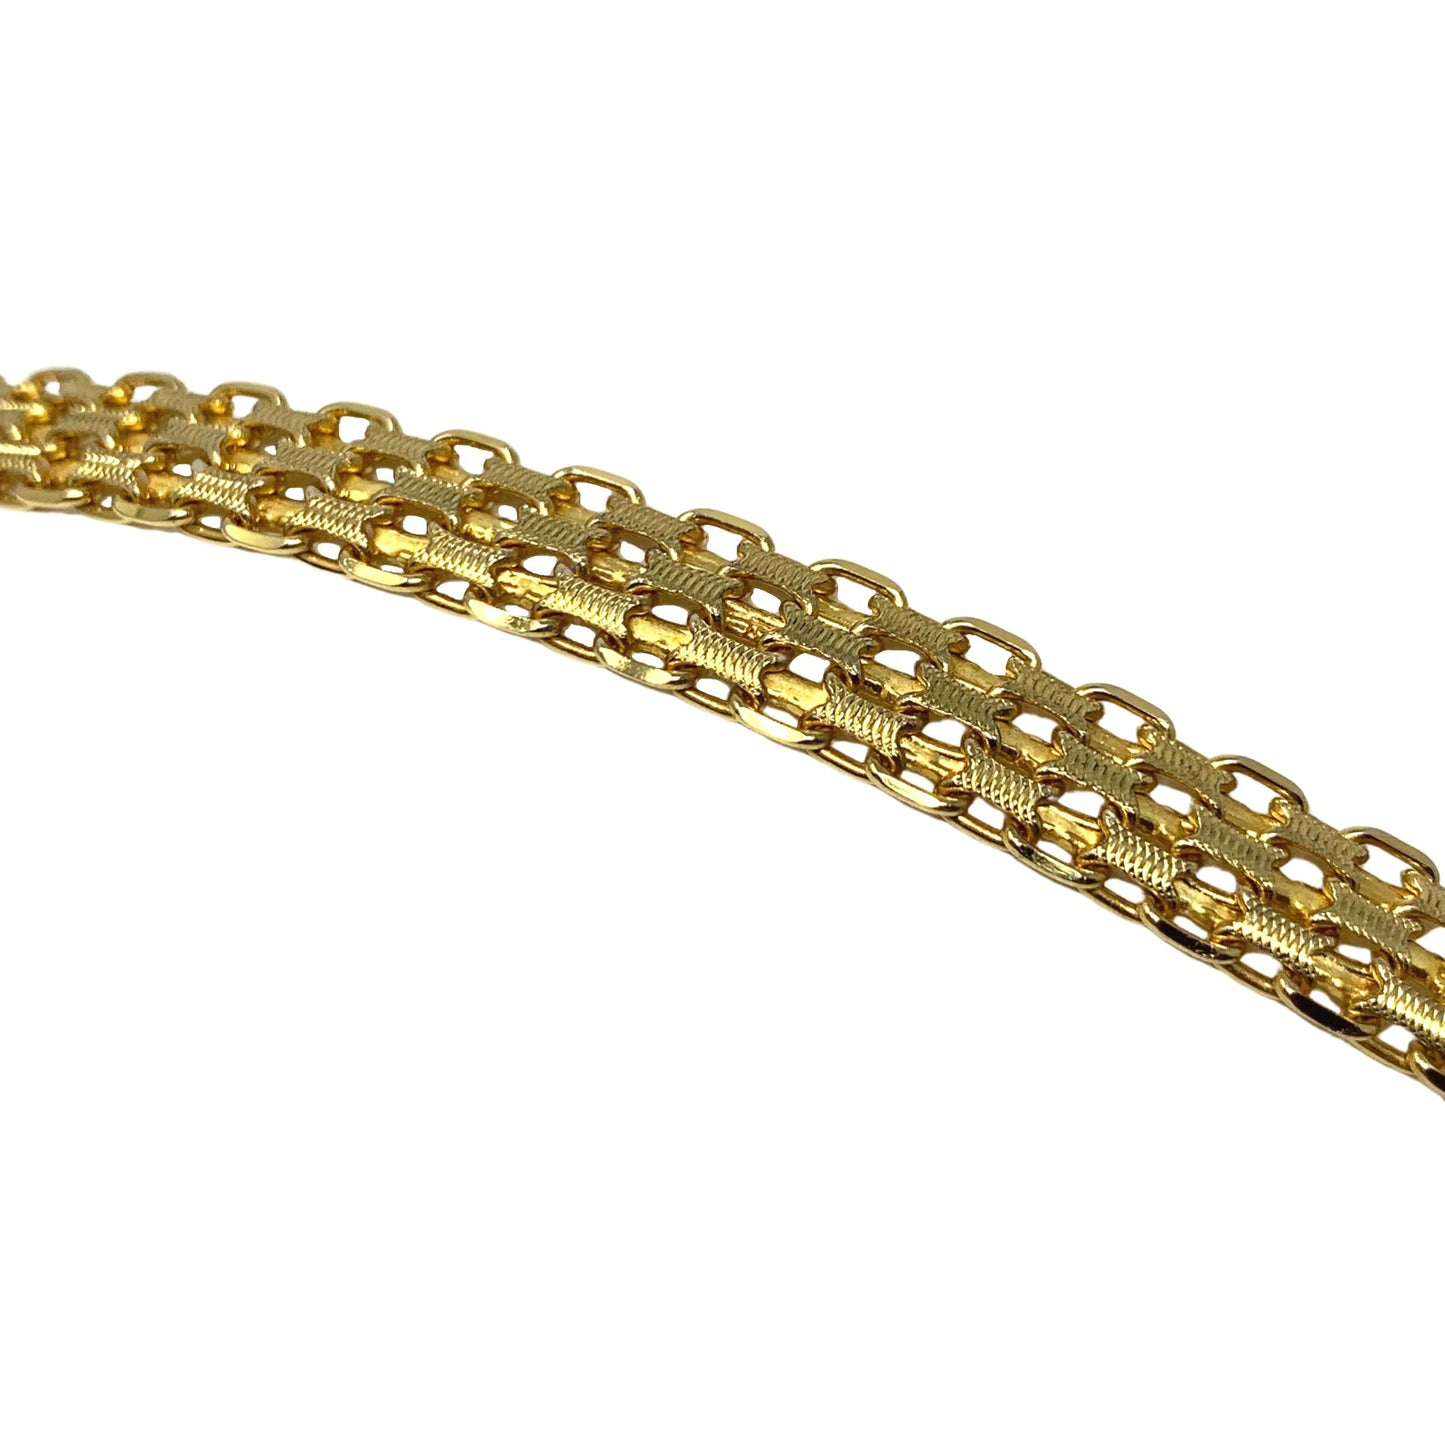 Laro Italian 14K Gold 7.4mm 16” Mesh Necklace